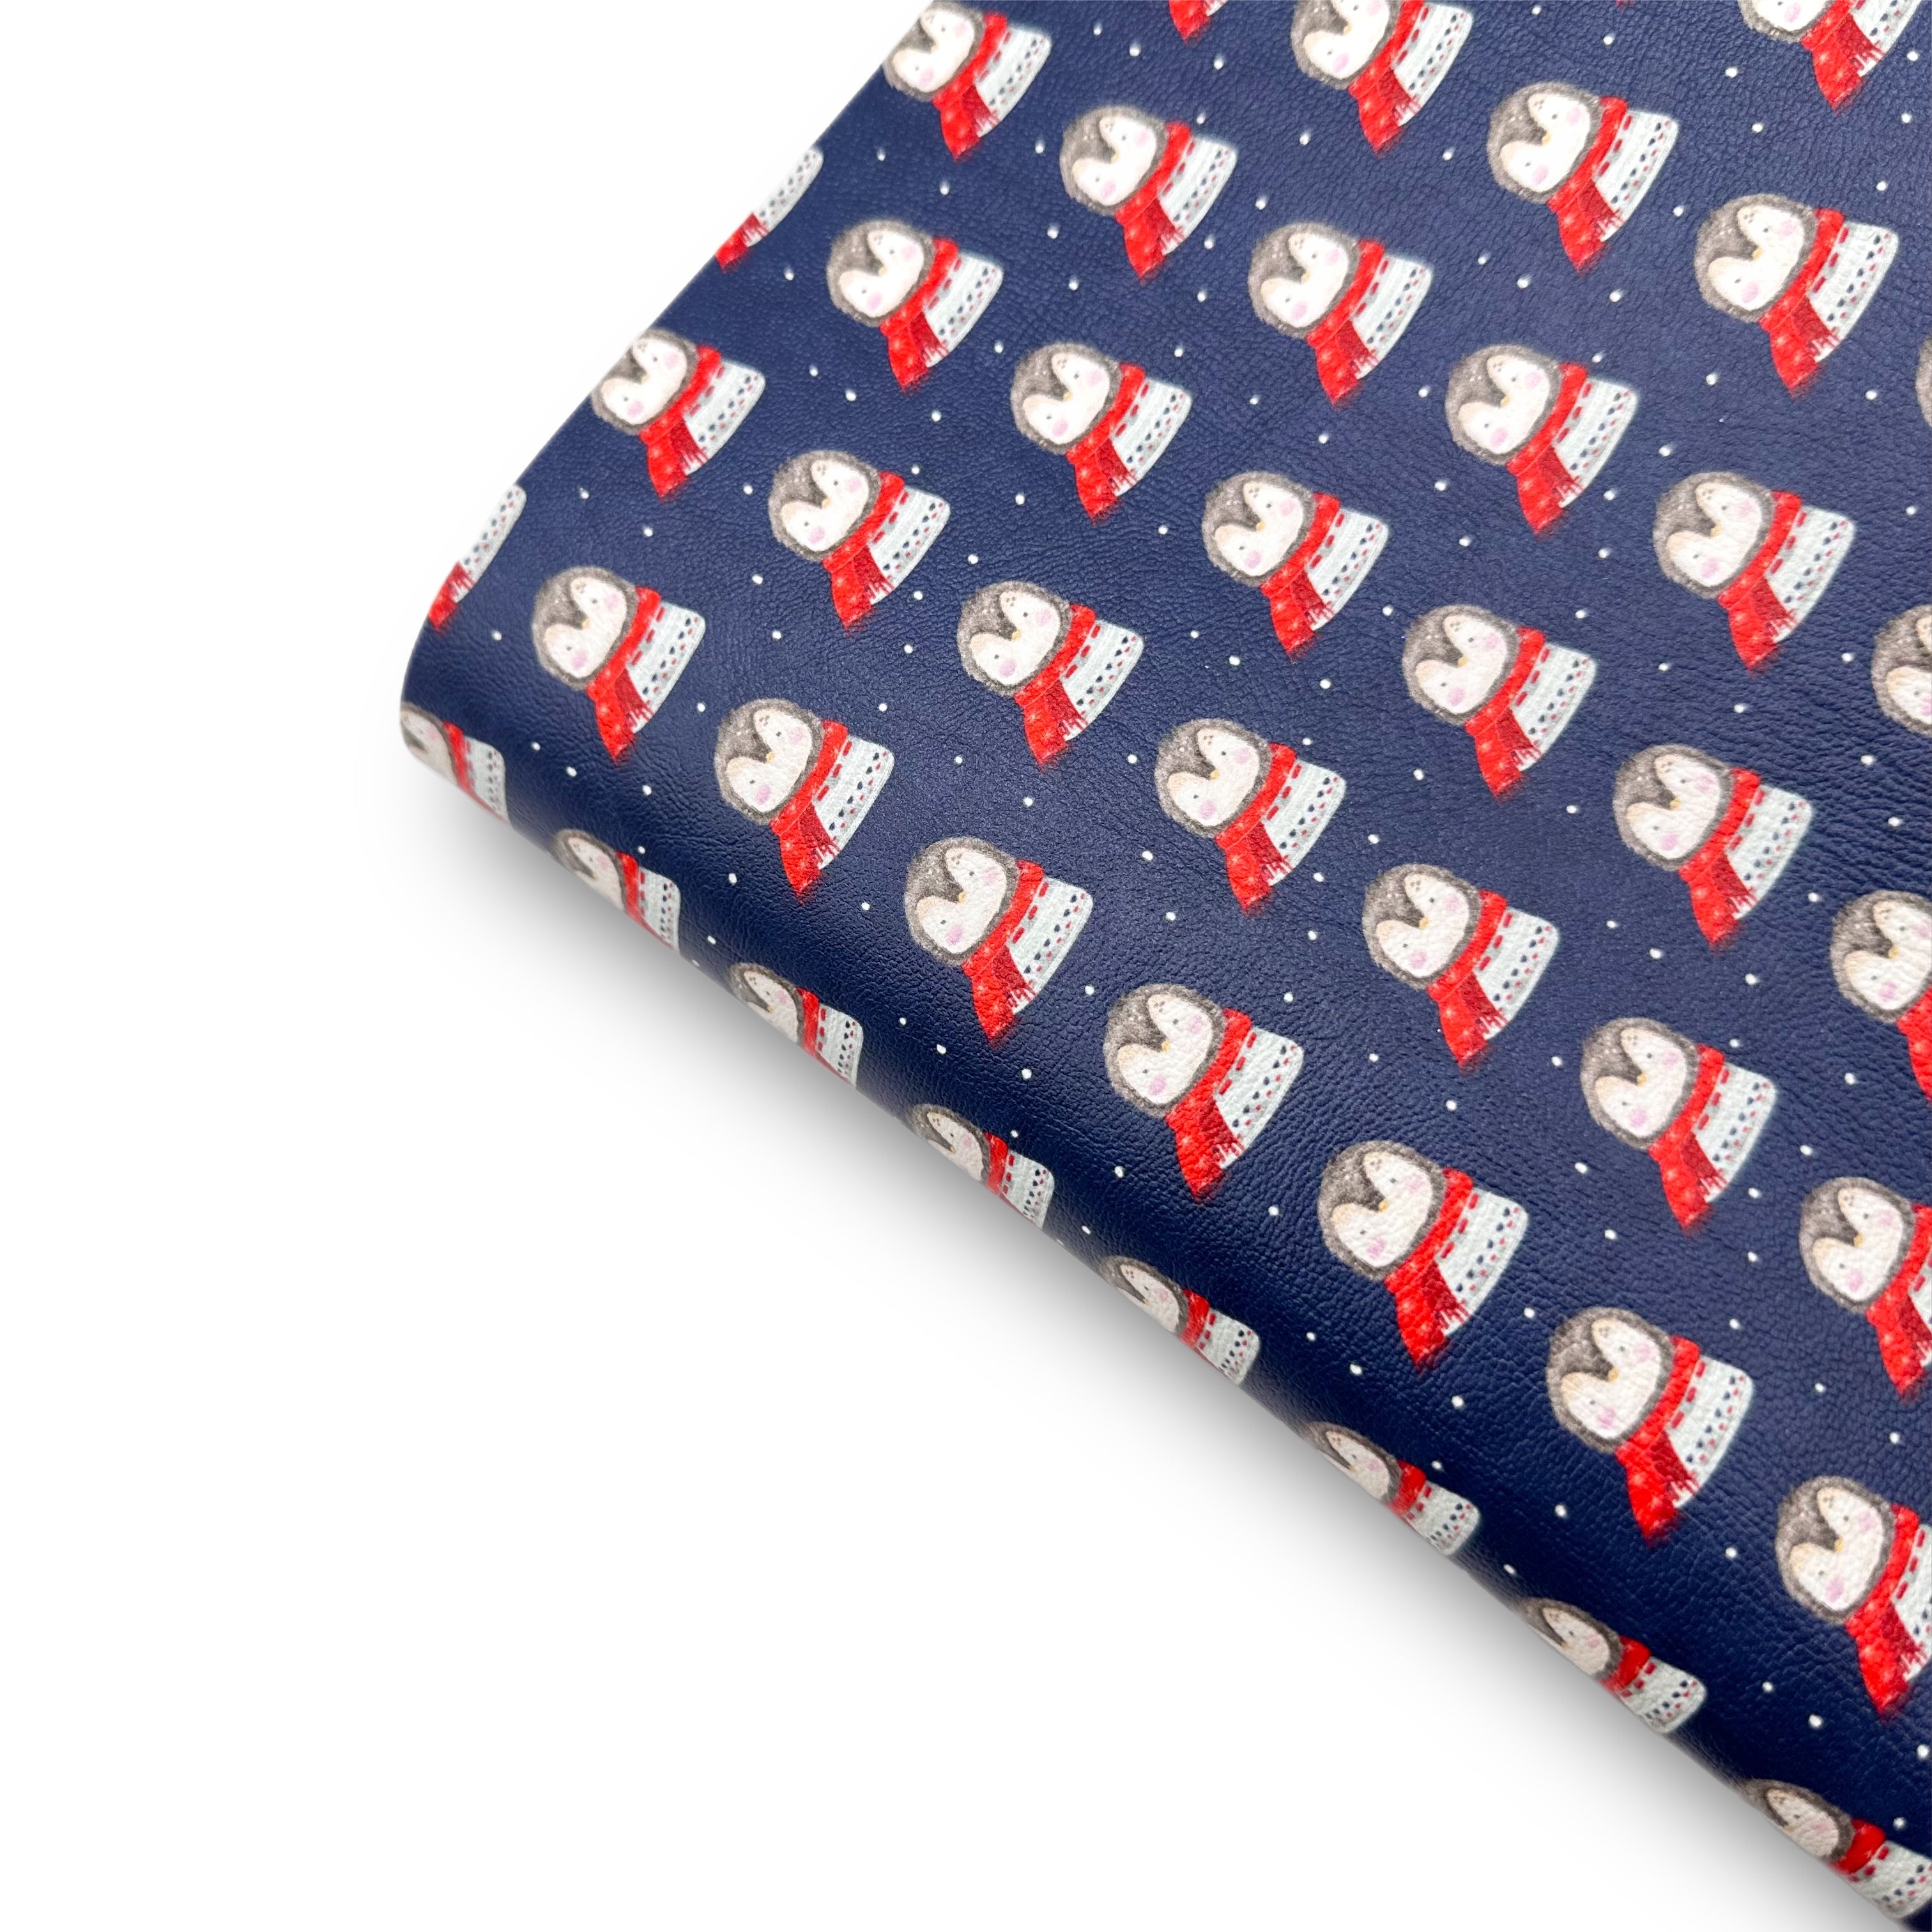 Little Penguin Premium Faux Leather Fabric Sheets